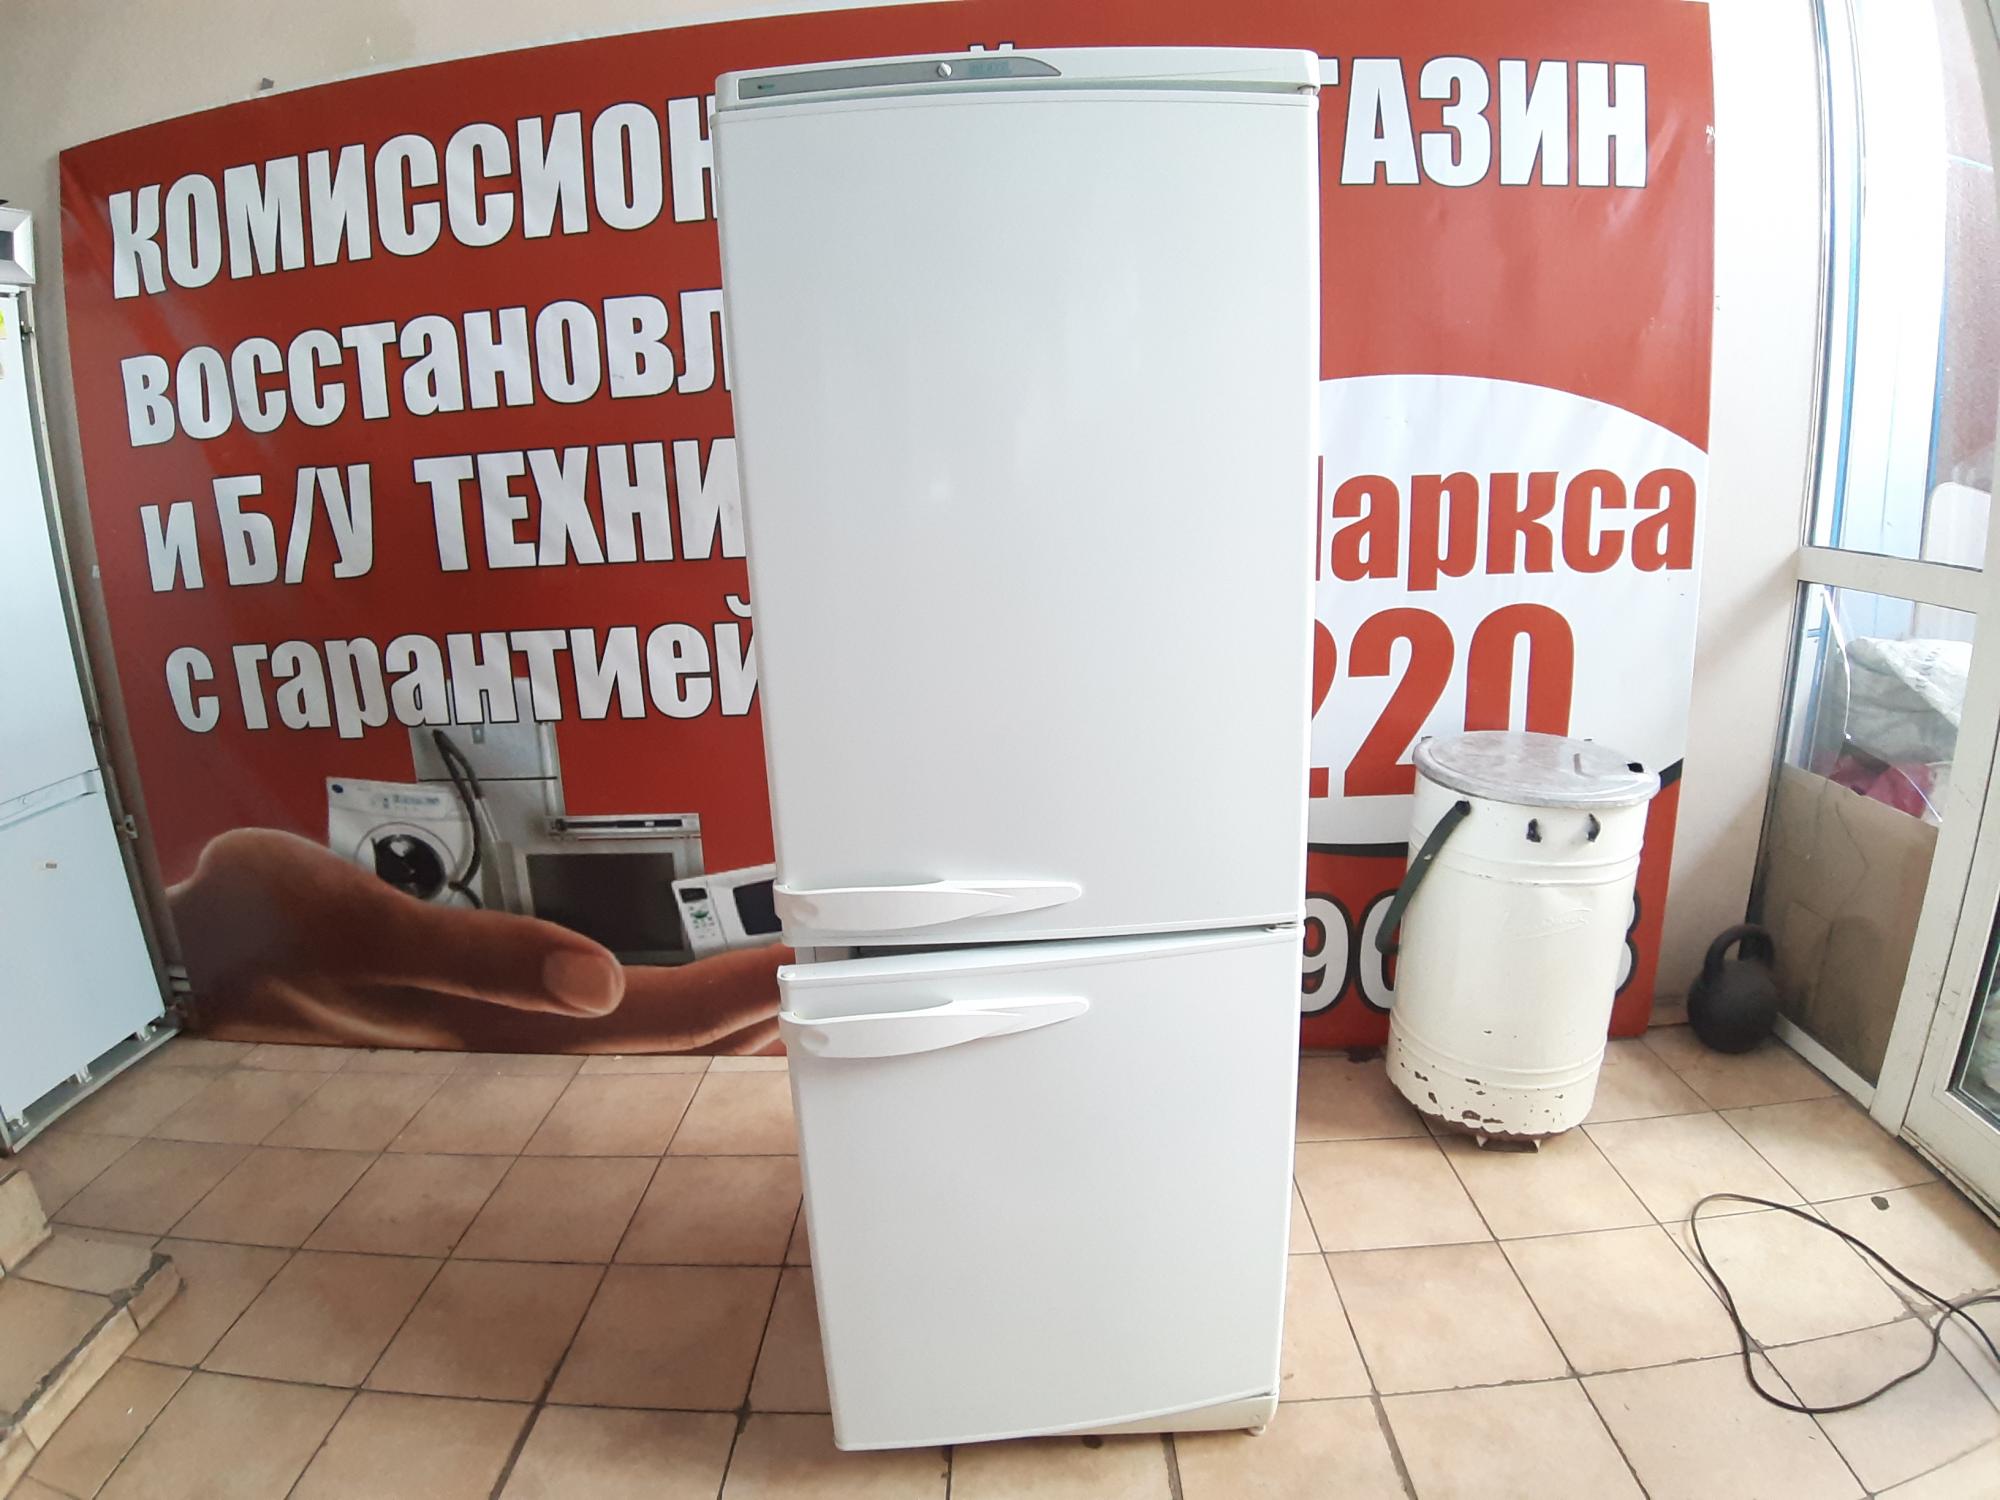 Объявление продается холодильник. Холодильник в Магнитогорске. Объявление на холодильник. Рекламы по продаже холодильников б/у в г. Бендеры цены. Купить холодильник в магнитогорске